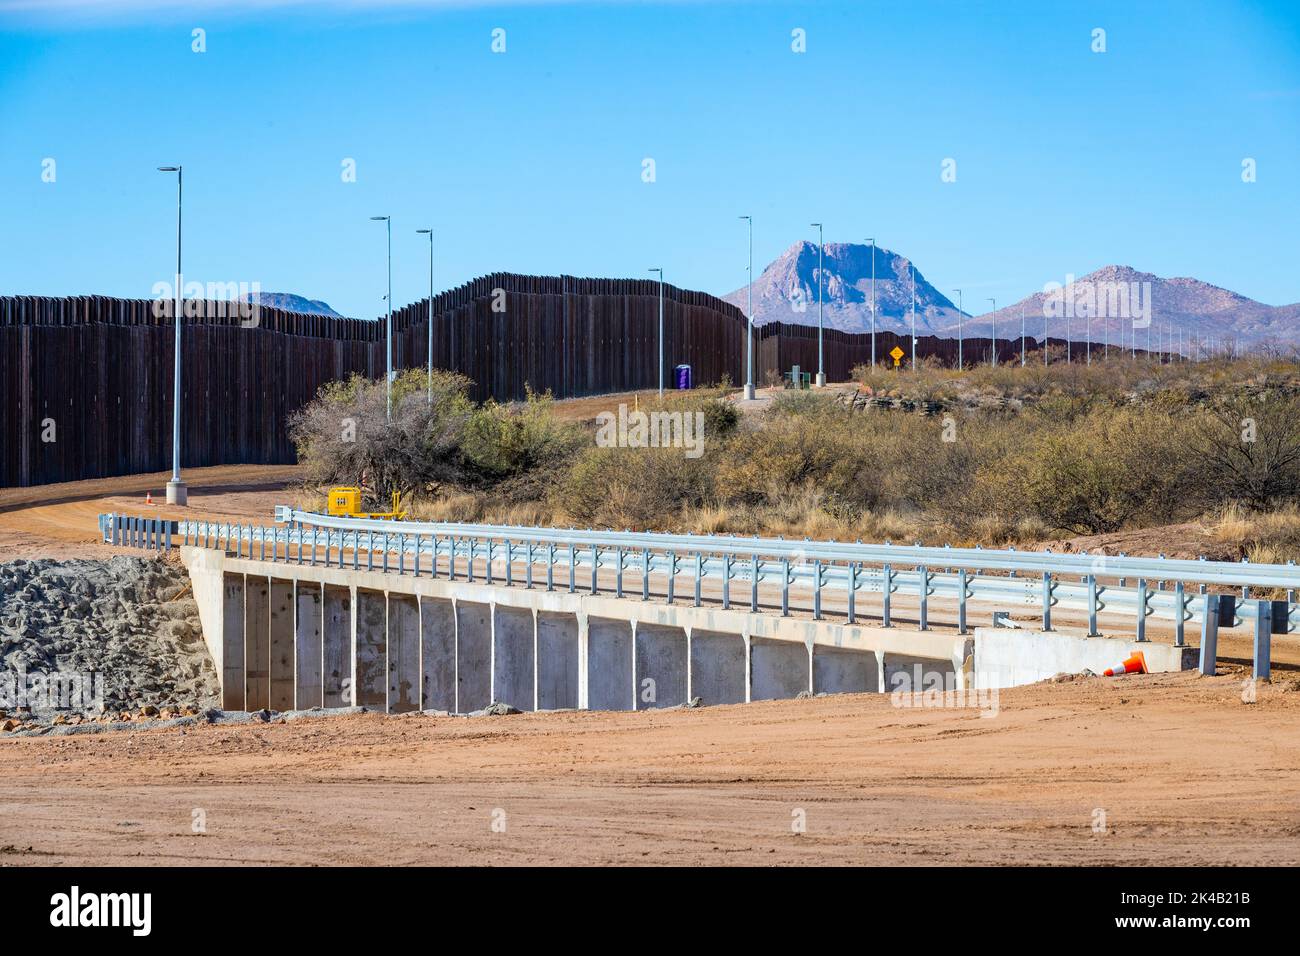 Kürzlich wurden am 14. Dezember 2020 Paneele beim neuen Grenzwandsystem-Projekt östlich von Douglas, Arizona, errichtet. Das Grenzwandsystem umfasst eine Kombination von Infrastruktur einschließlich neuer Allwetterzugangsstraßen. (Foto von Jerry Glaser. Stockfoto